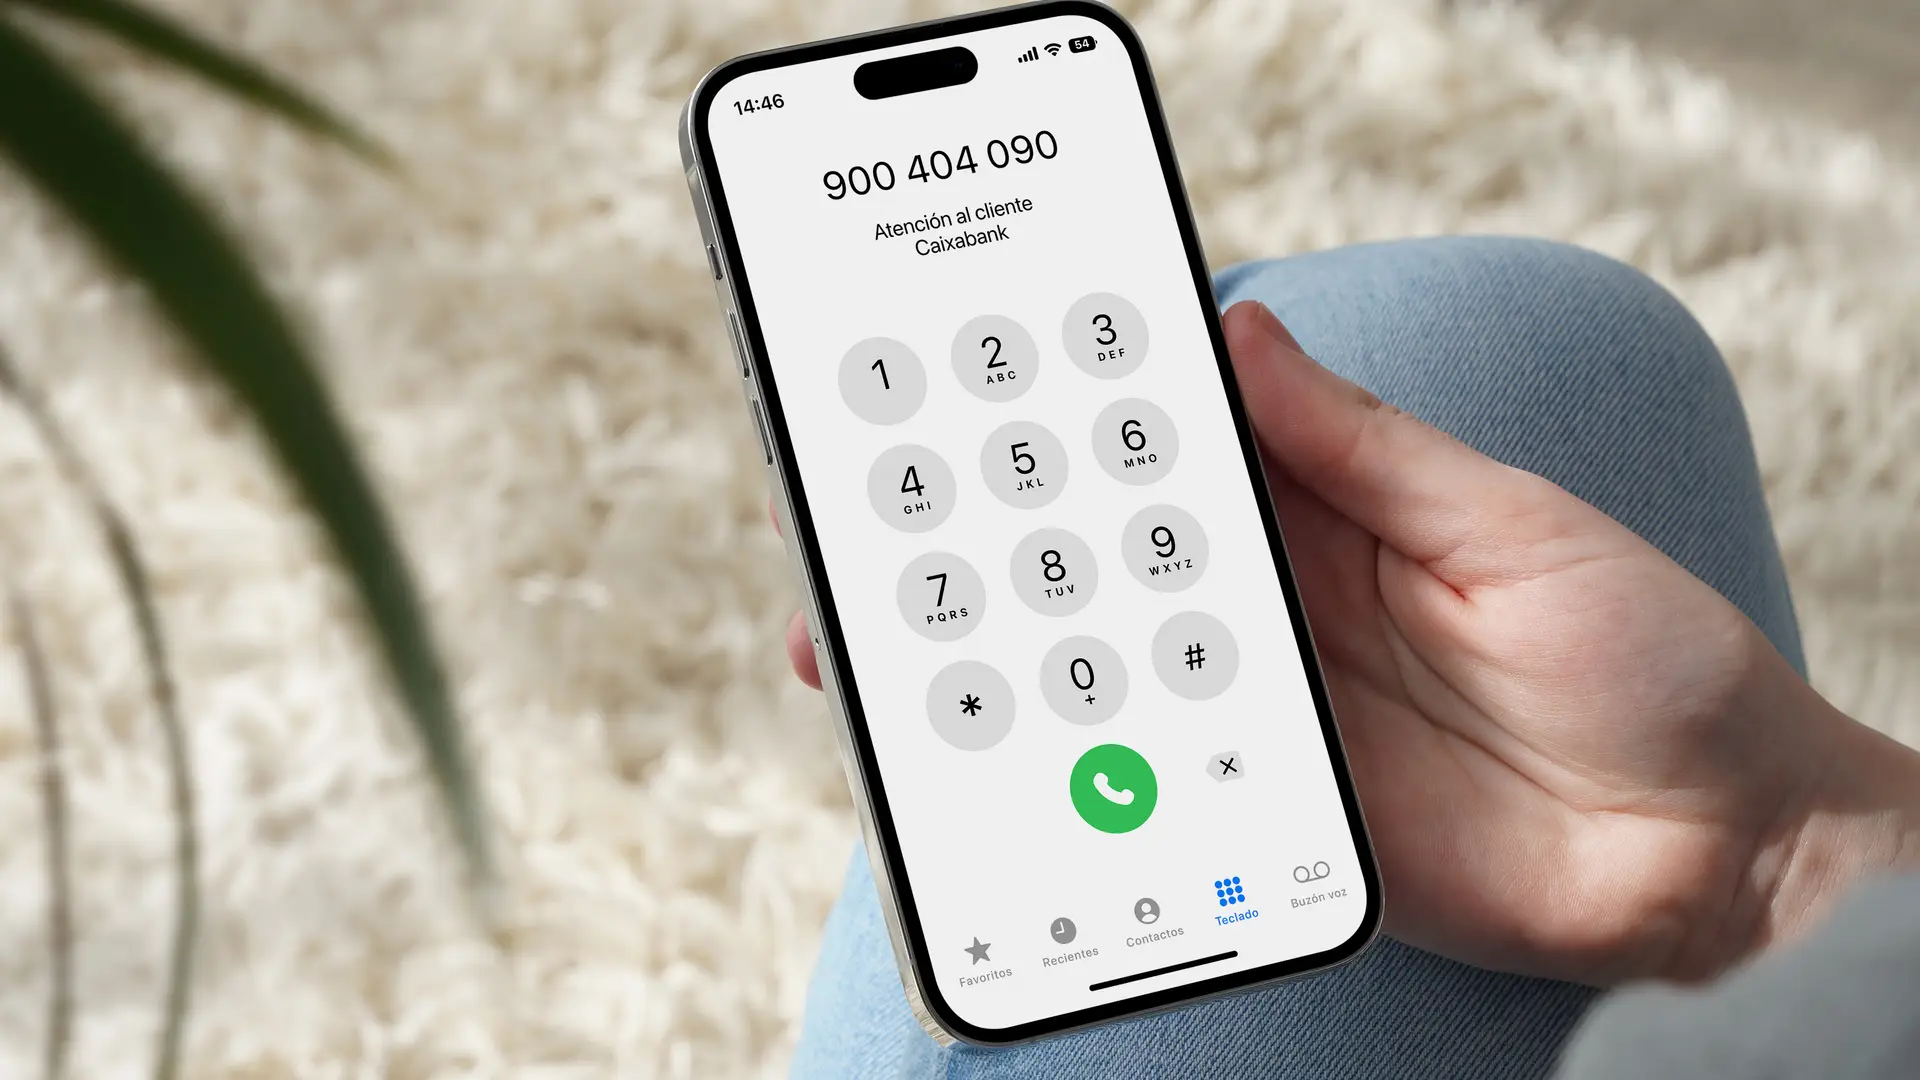 Una persona llamando por teléfono al 900 404 090 que es el número de atención al cliente de Caixabank